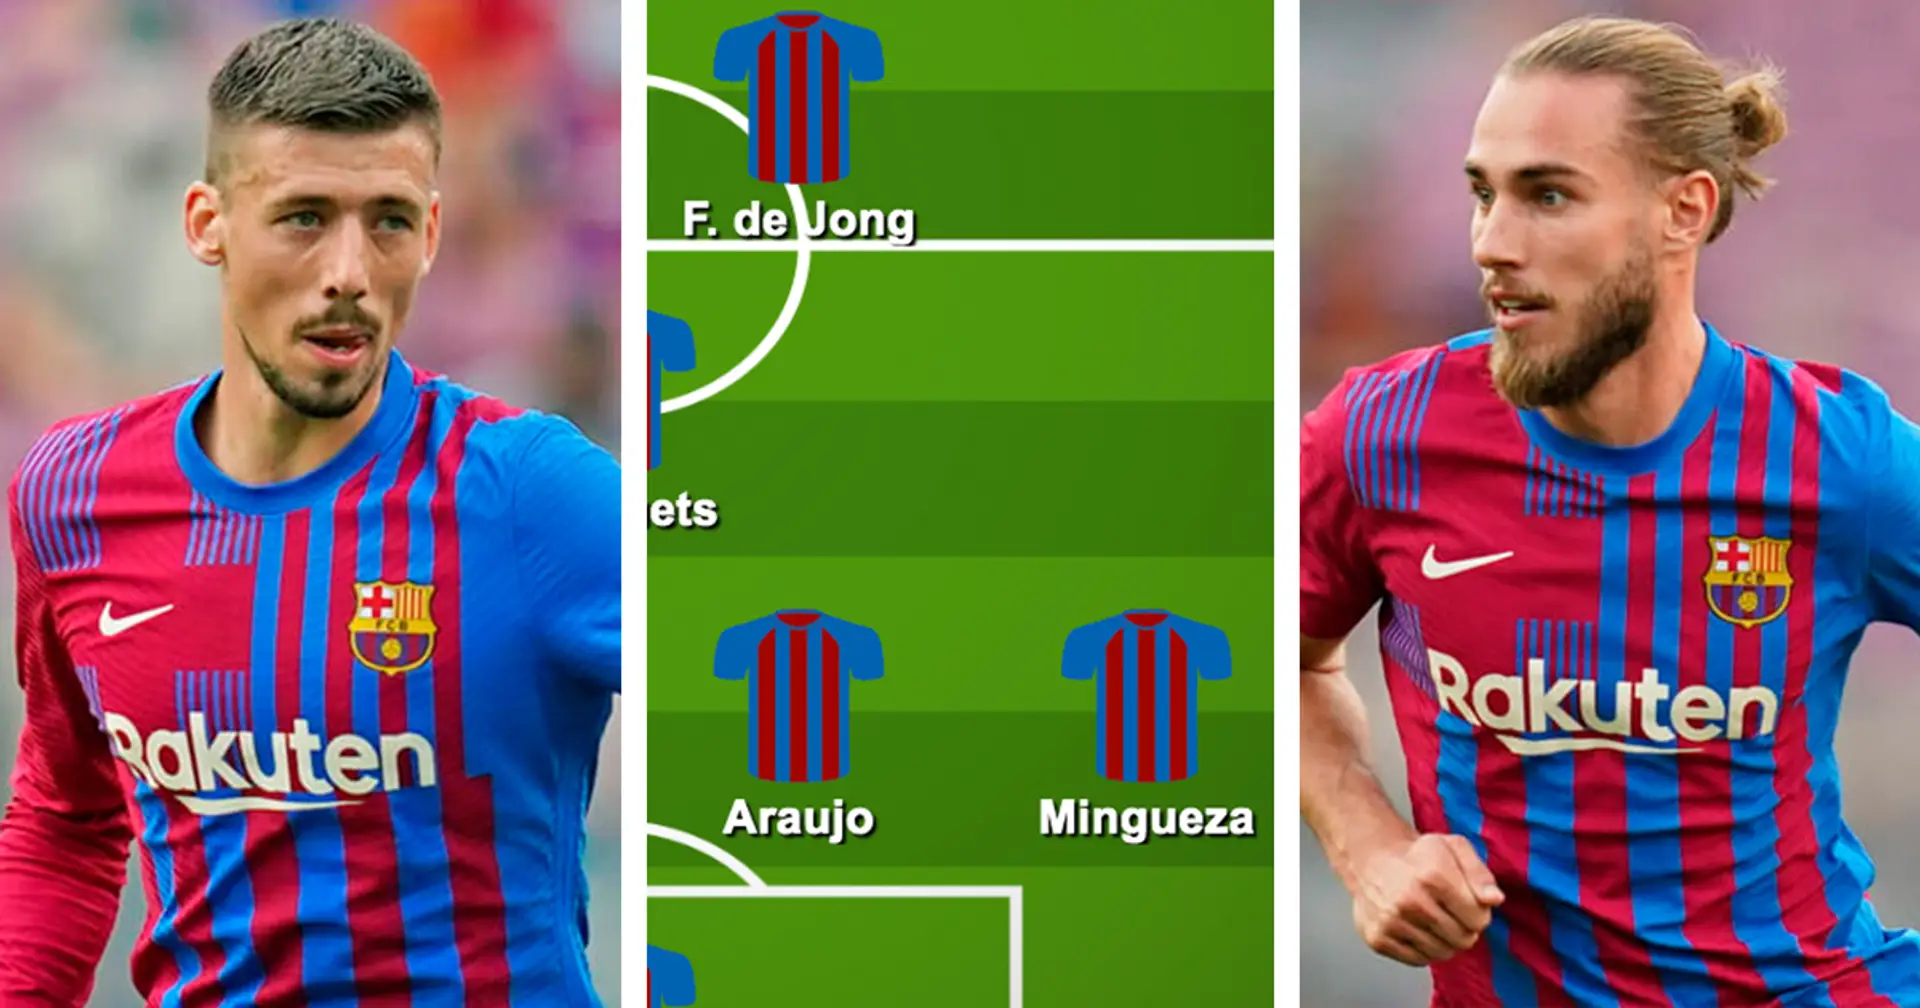 ¿Con Lenglet? Elige tu XI favorito del Barça para el partido ante el Levante entre 3 opciones